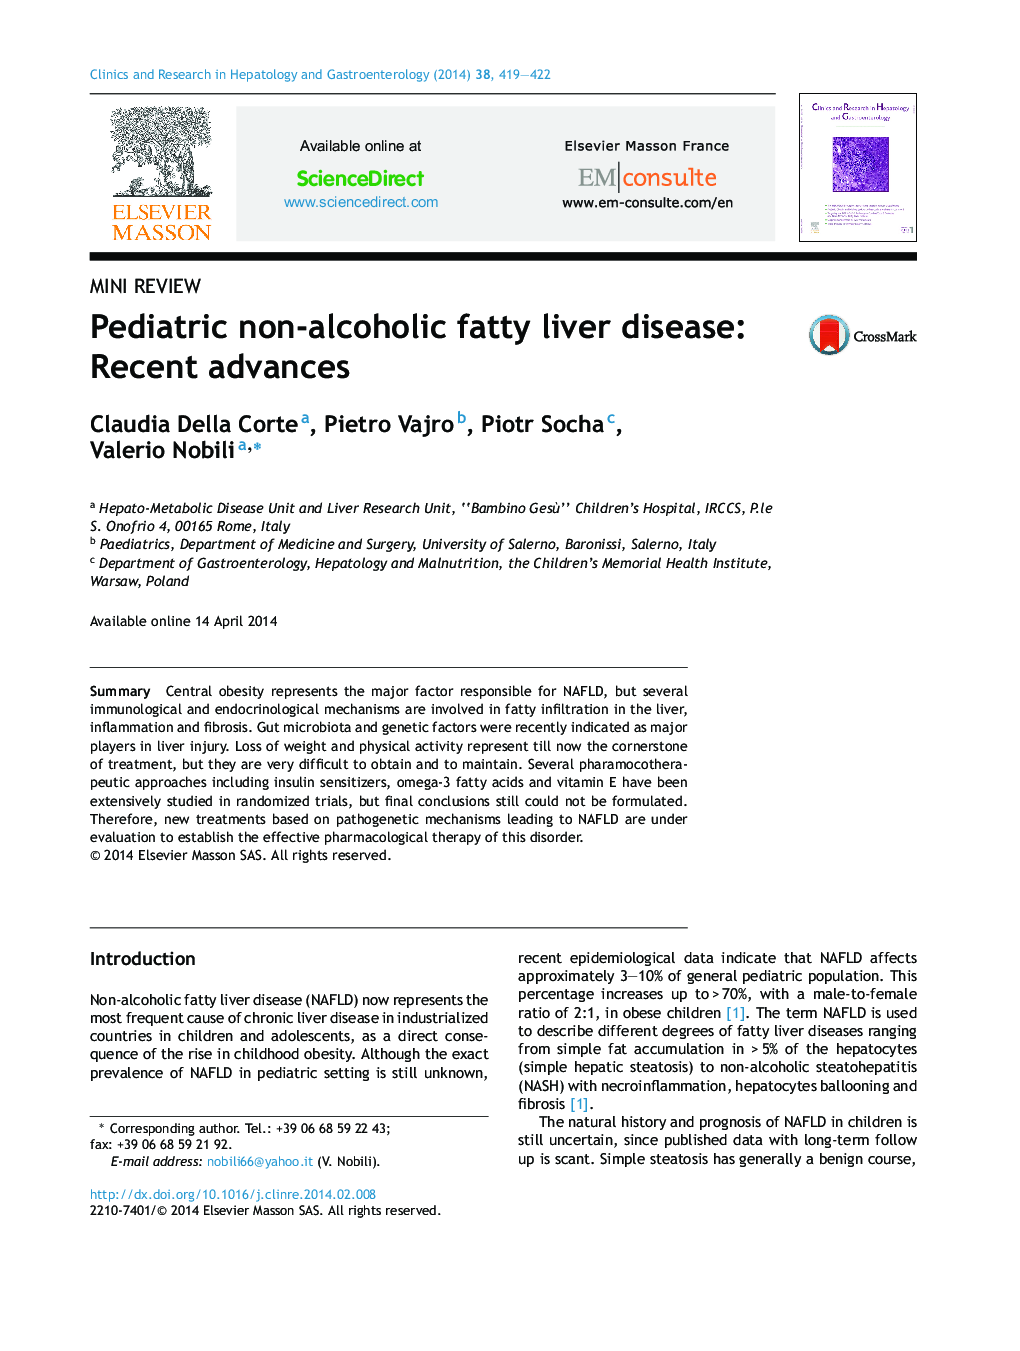 Pediatric non-alcoholic fatty liver disease: Recent advances